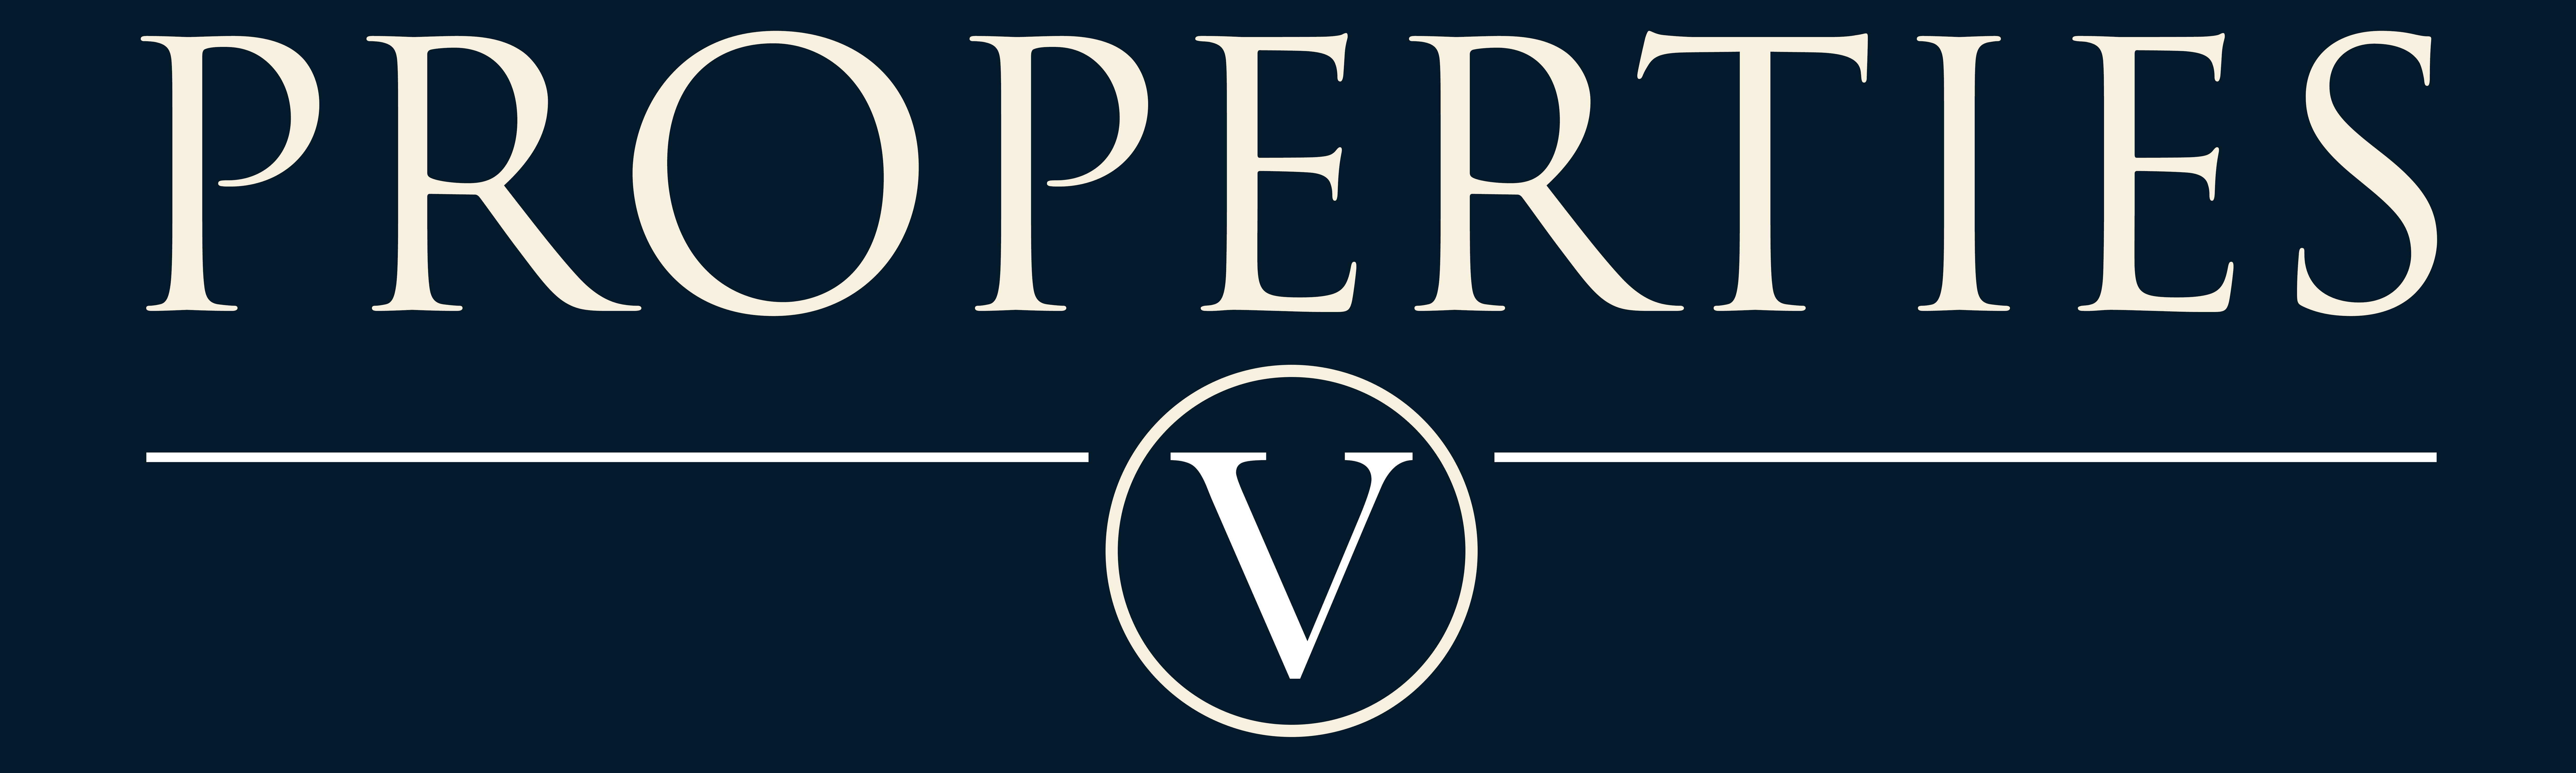 Propertiers V logo